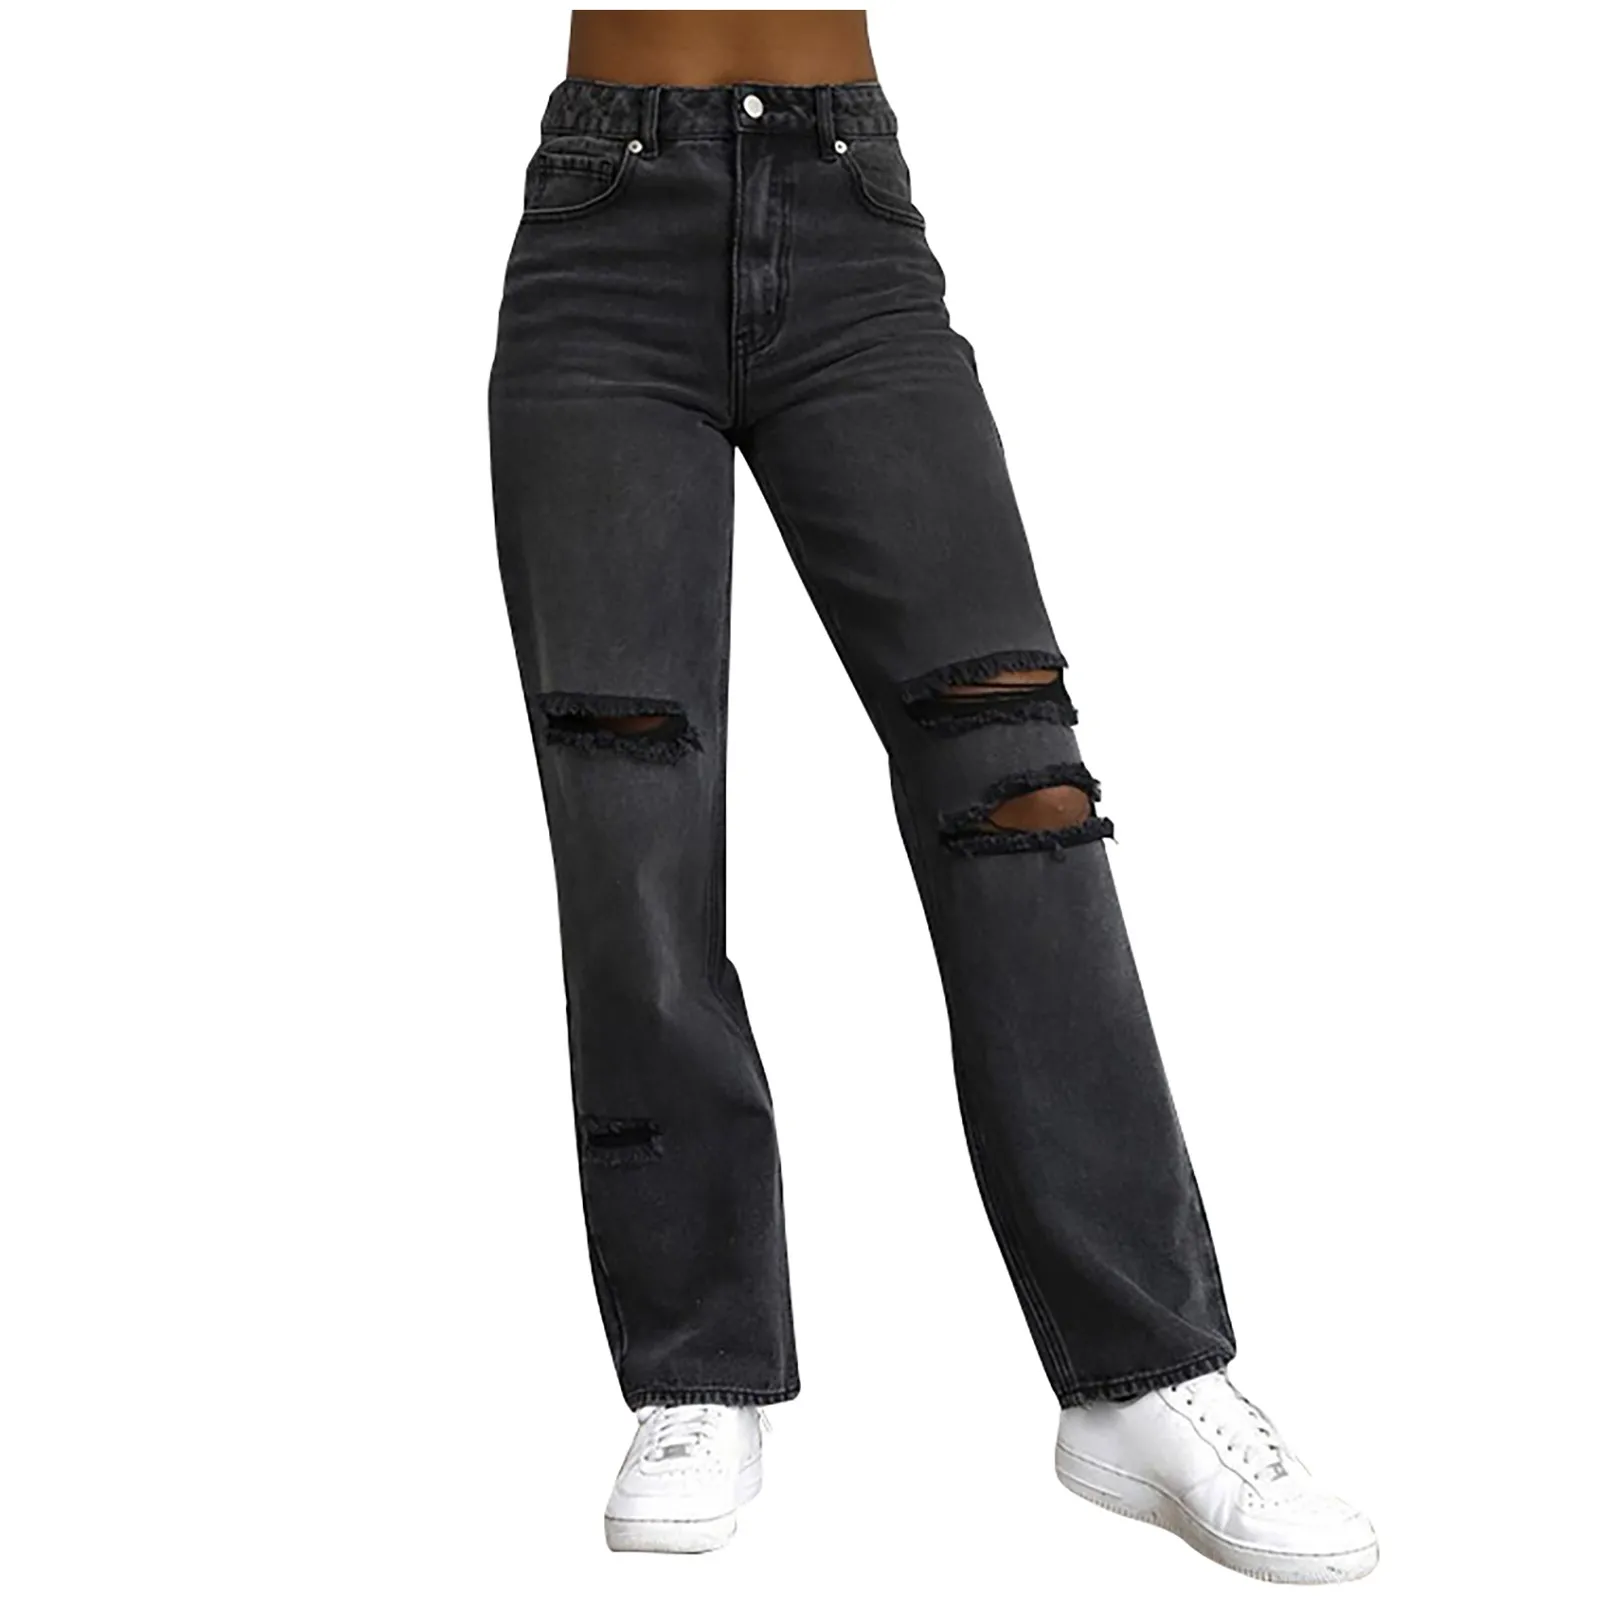 Женские выстиранные брюки-карго, однотонные джинсы с заниженной талией и отверстиями, расклешенные Модные брюки на щиколотке, эстетика, Сексуальные прямые брюки 청바지